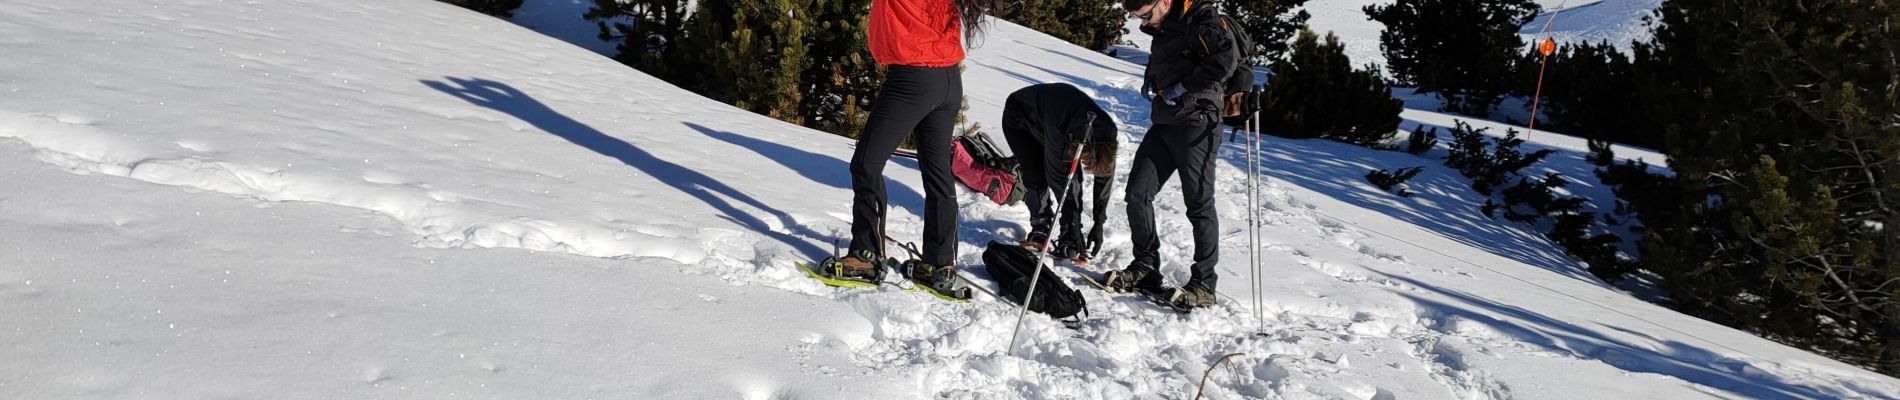 Trail Snowshoes Font-Romeu-Odeillo-Via - Autour du refuge de La Calme  - Photo